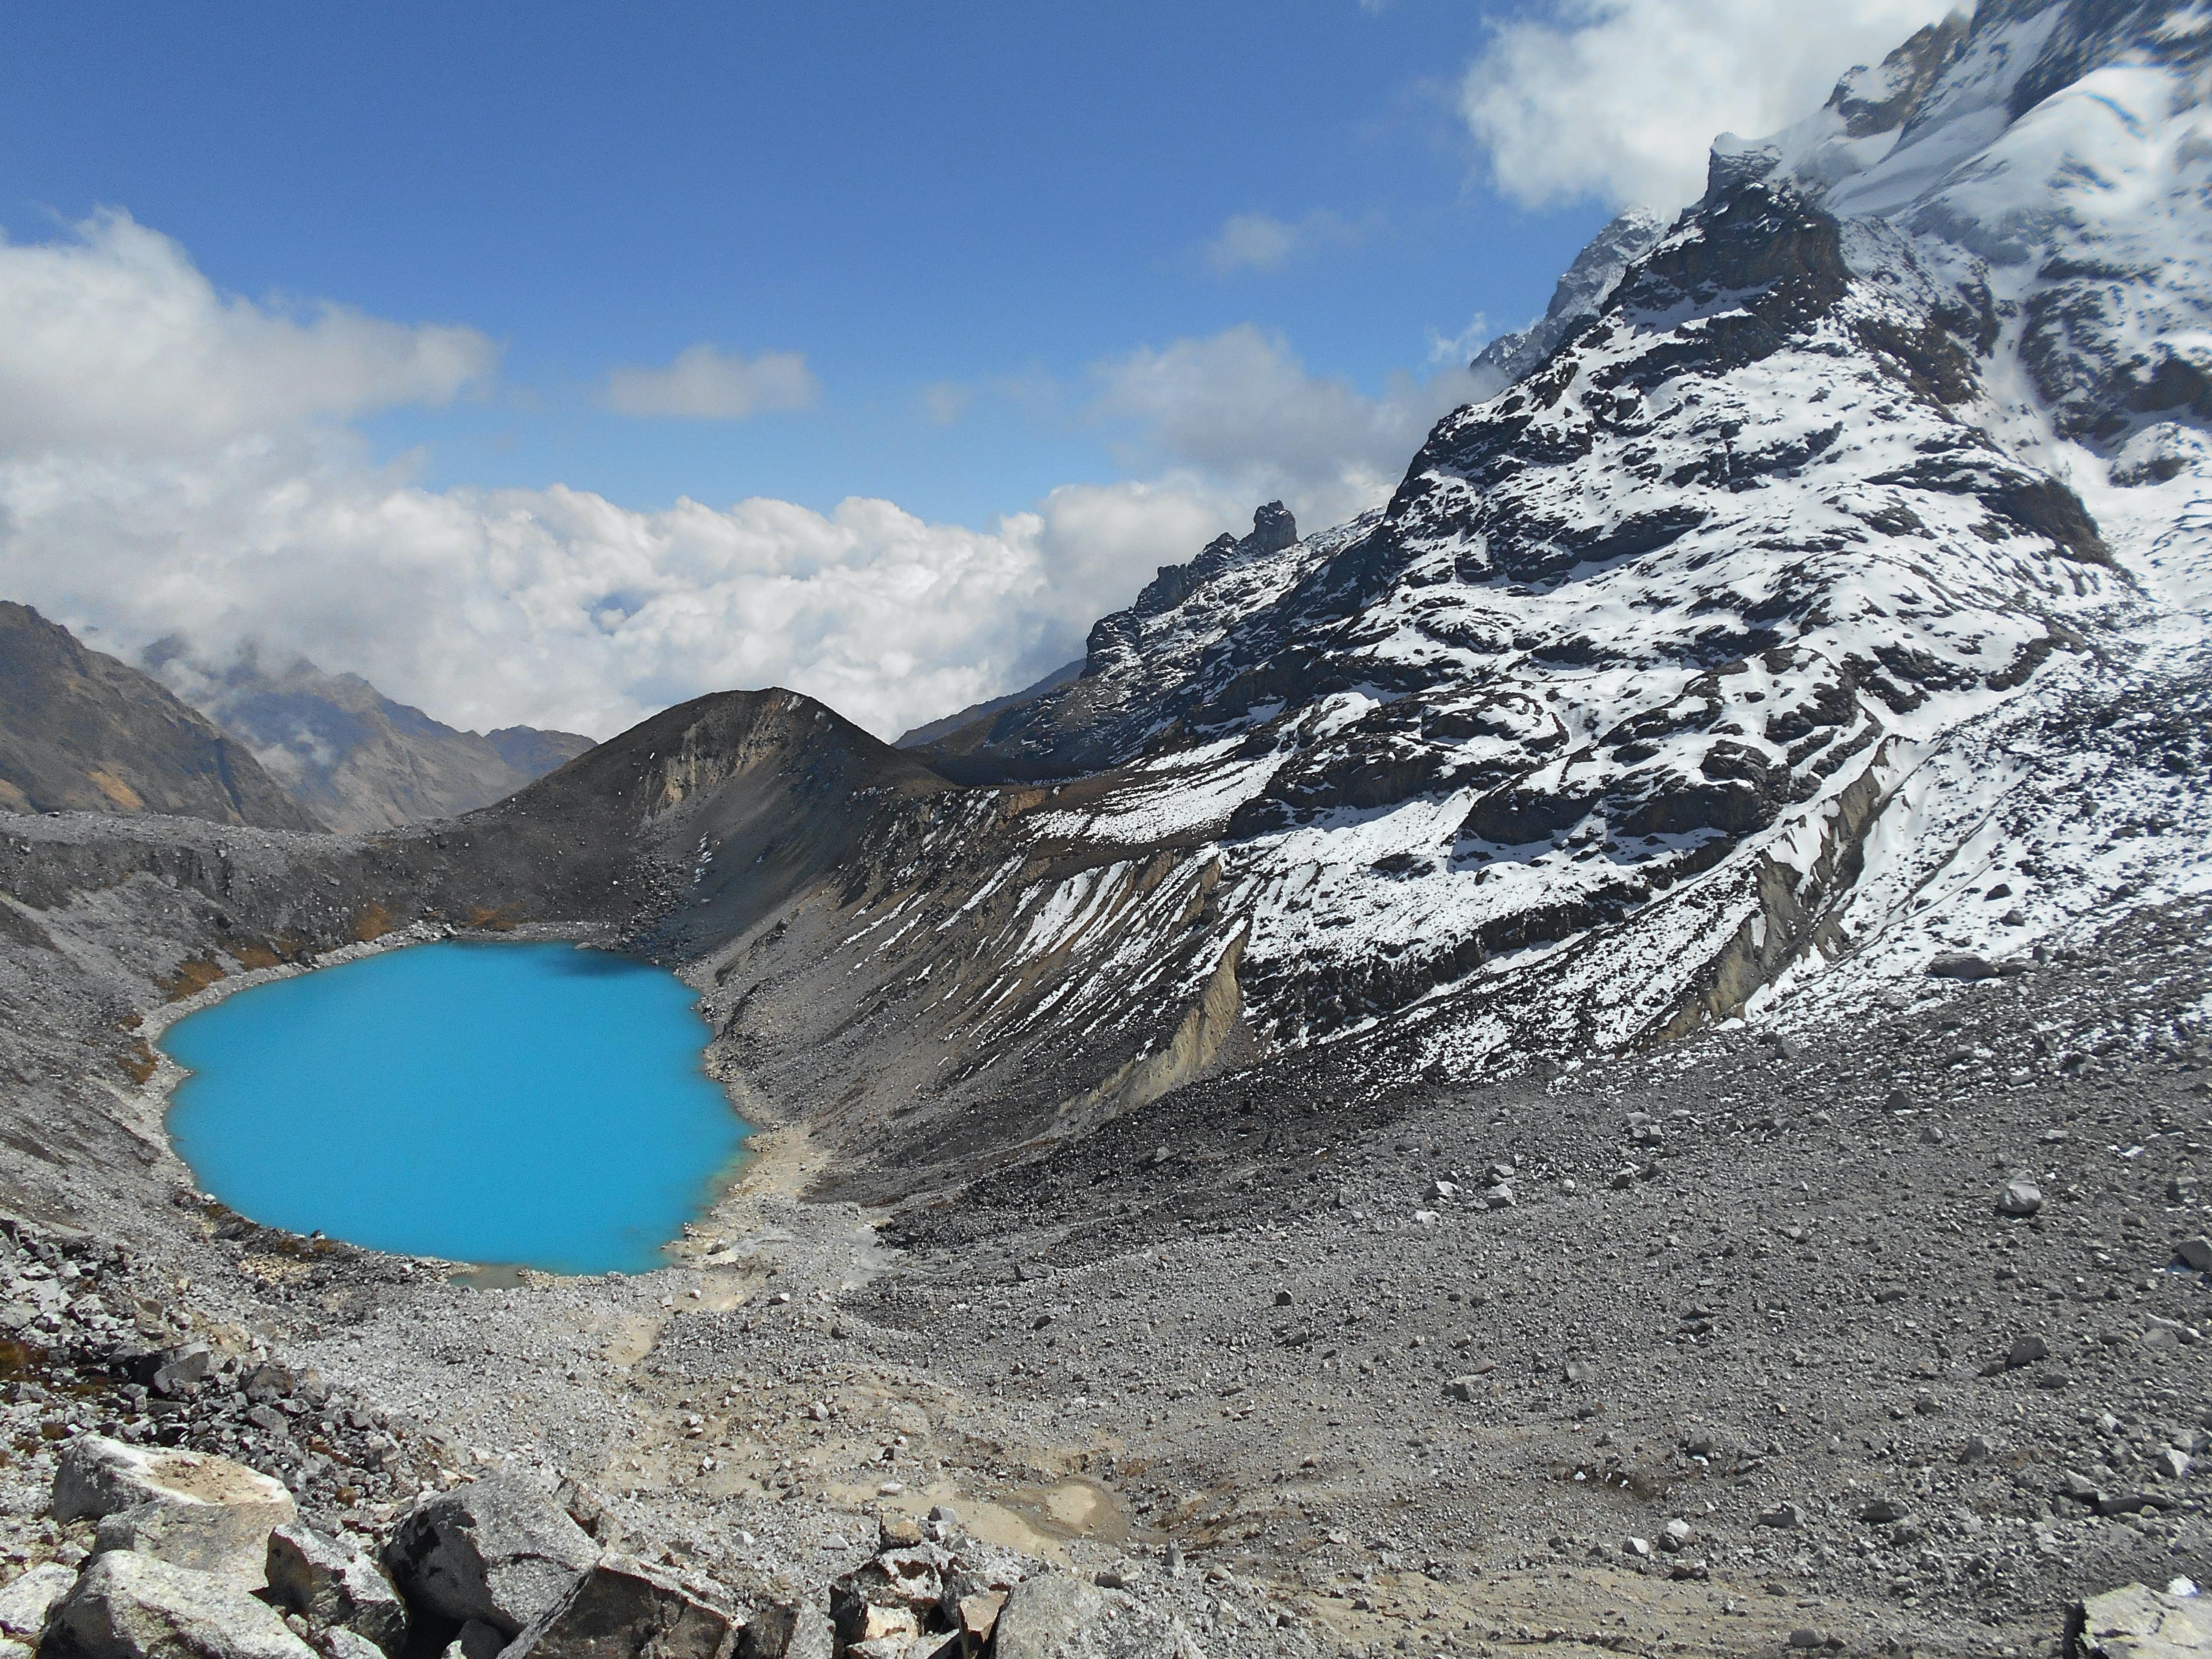 bright blue lake next to snowy mountain